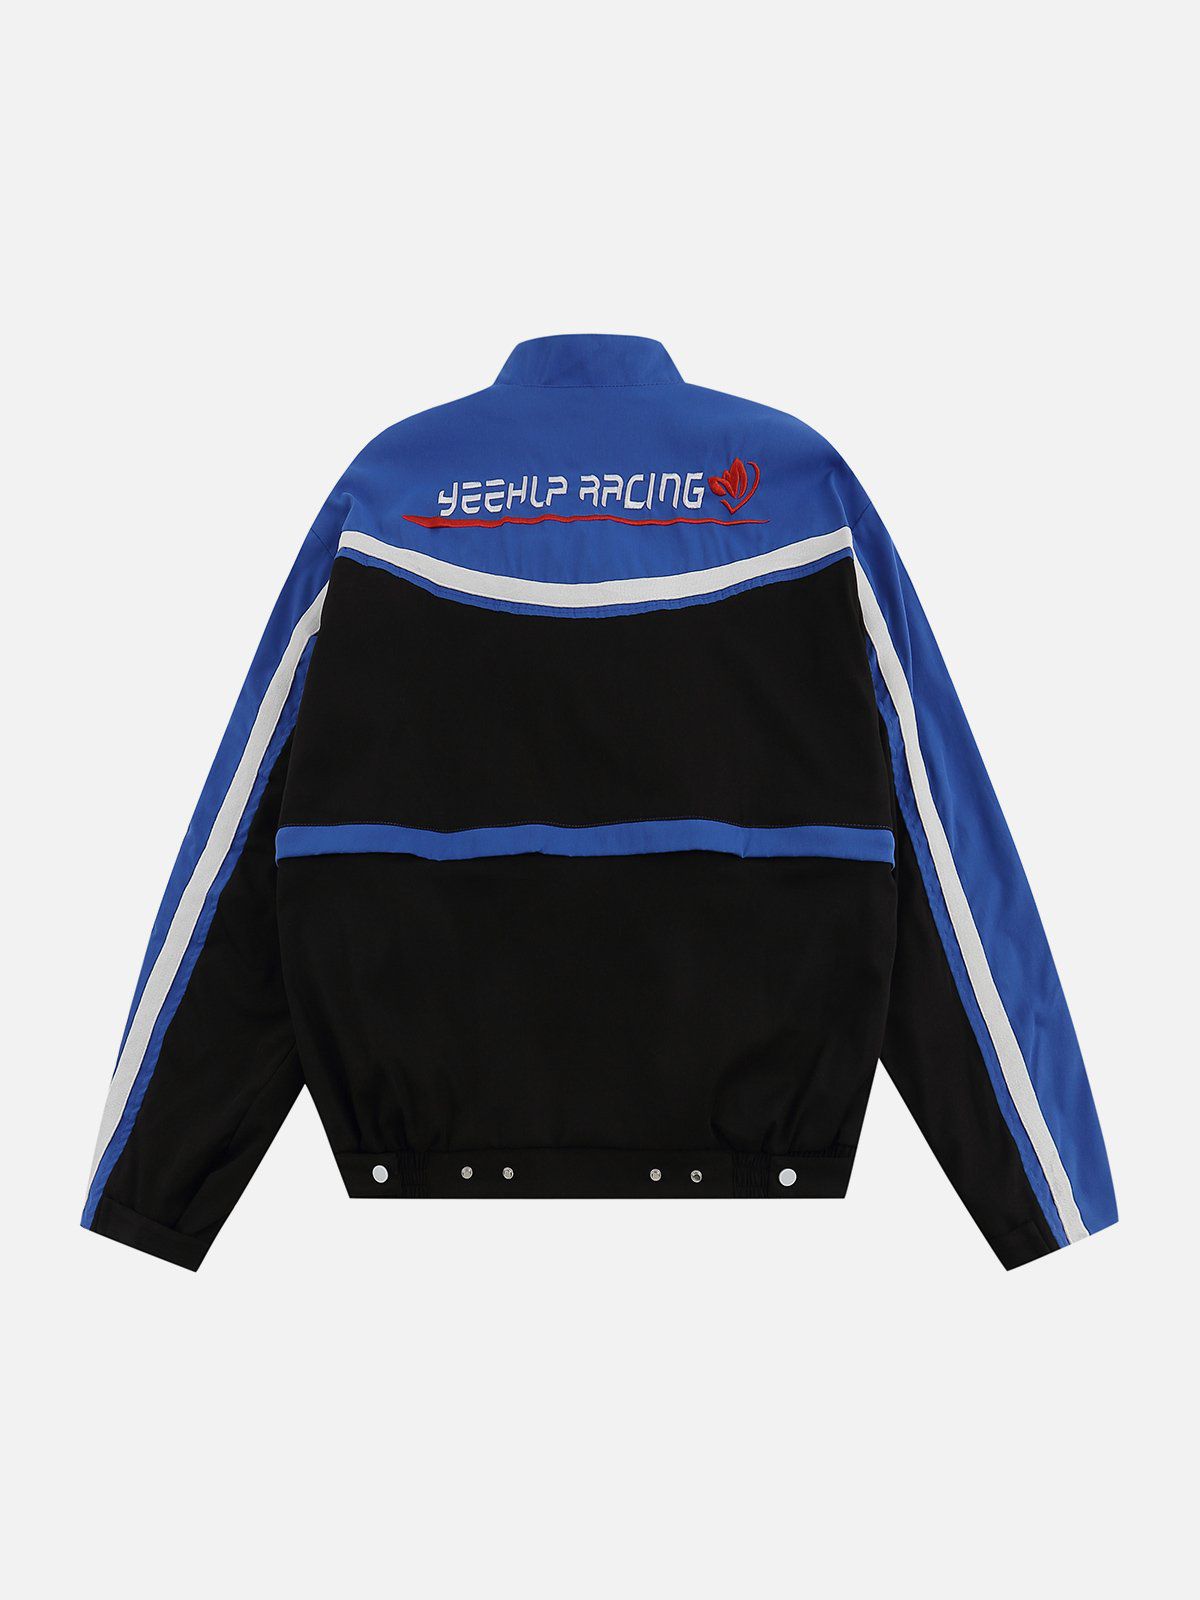 Majesda® - Detachable Hem Racing Jacket outfit ideas, streetwear fashion - majesda.com